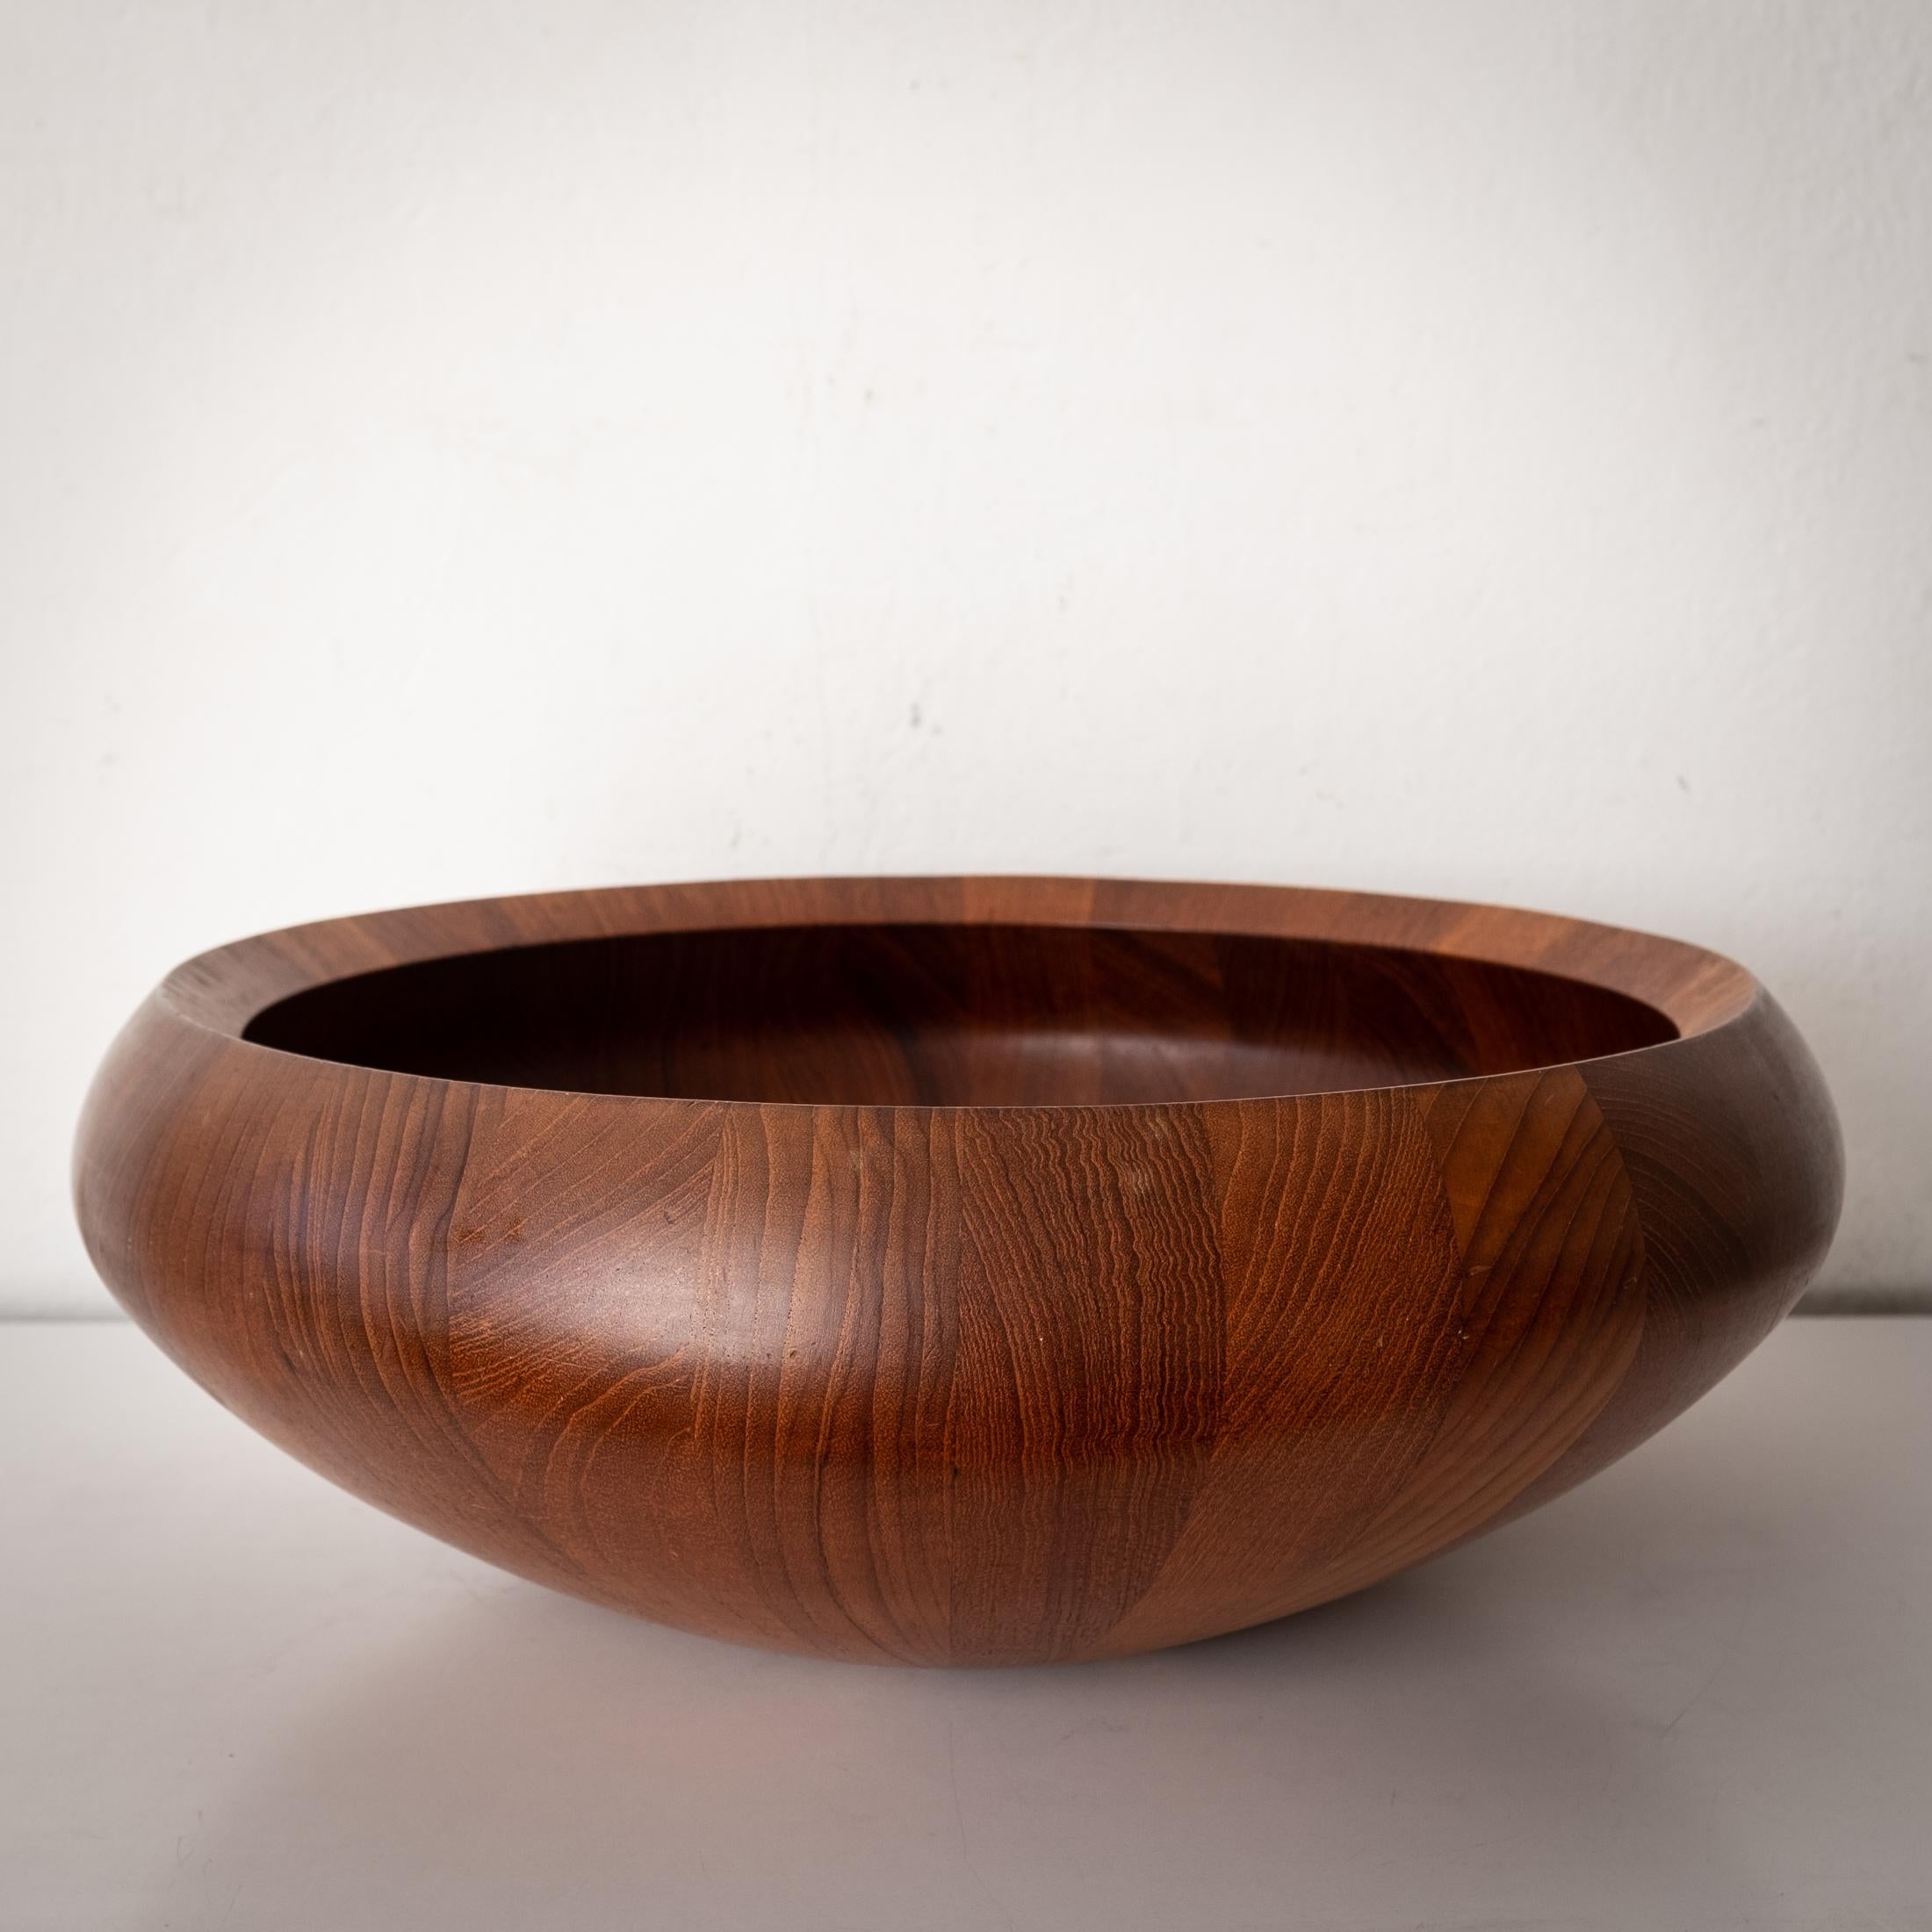 Scandinavian Modern Large Staved Teak Bowl by Jens Quistgaard for Dansk